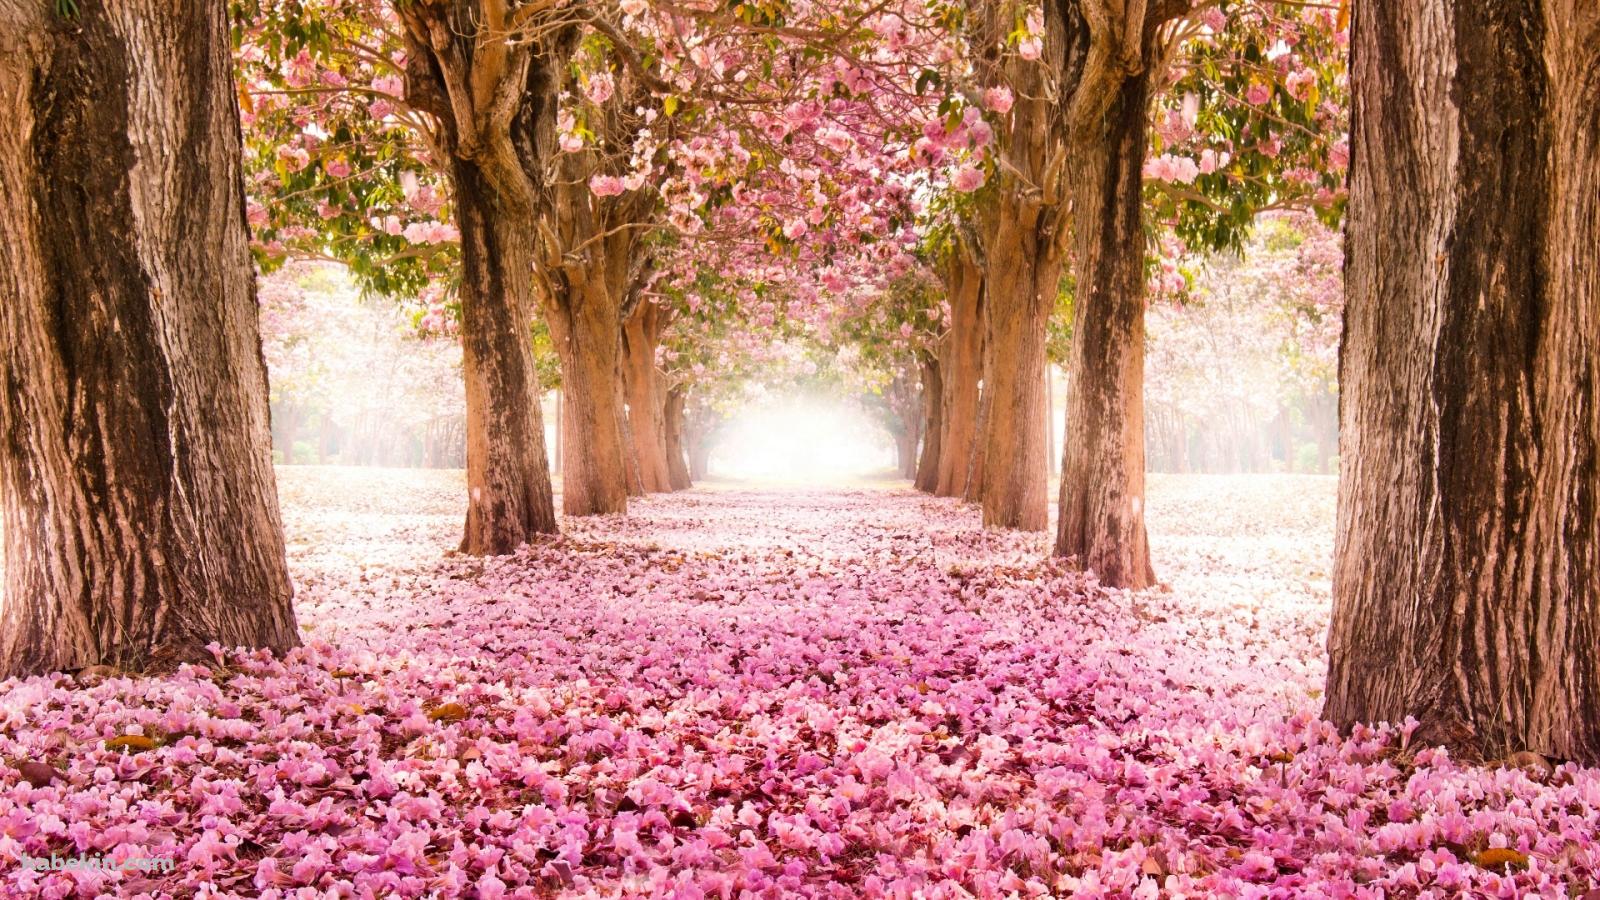 4月 ピンクの桜の並木道の壁紙(1600px x 900px) 高画質 PC・デスクトップ用